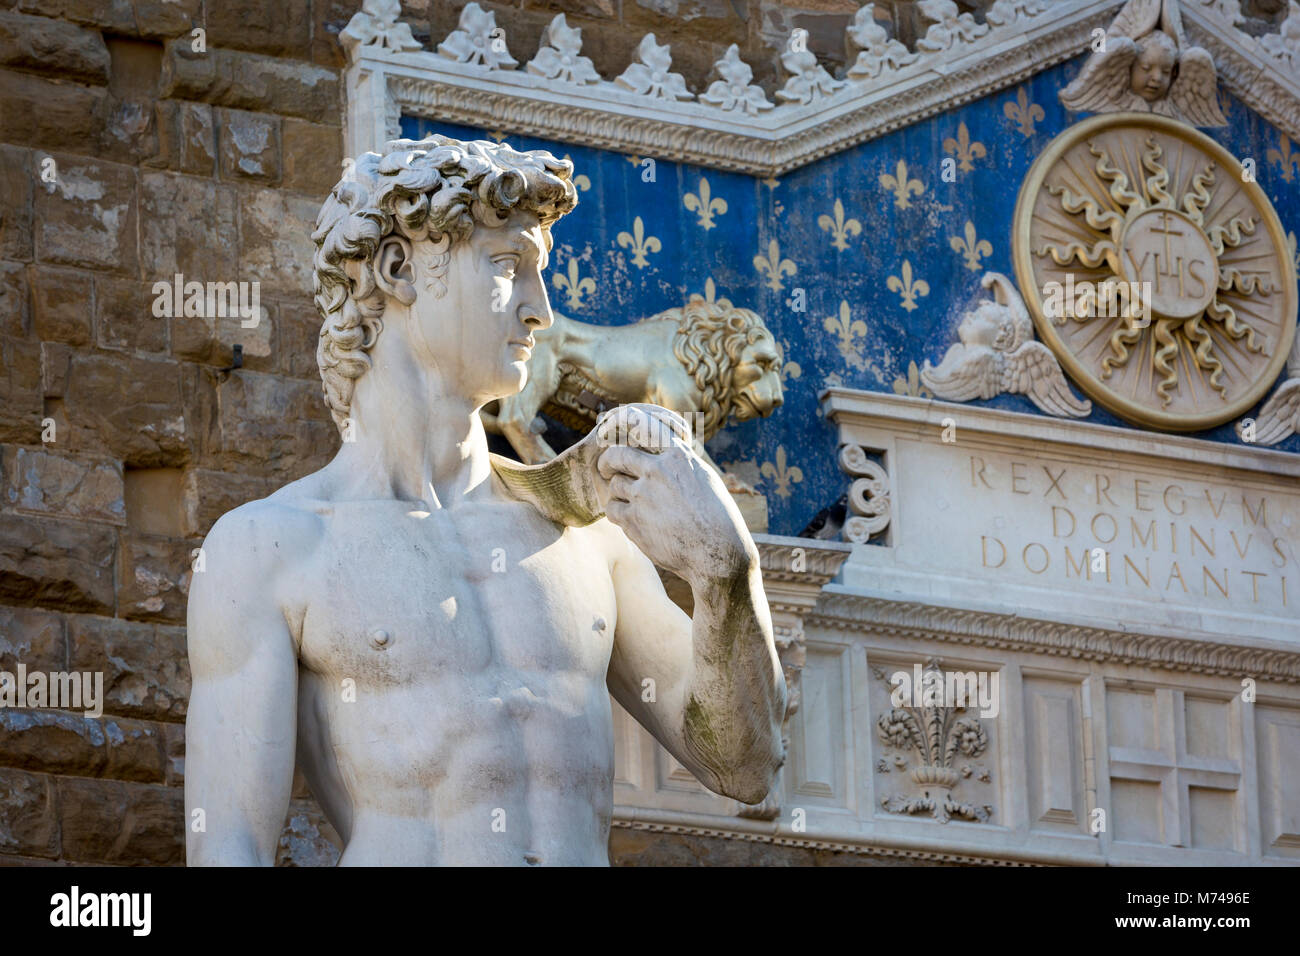 Copie du David de Michel-Ange sculpture à la Piazza della Signoria, Florence, Toscane, Italie Banque D'Images